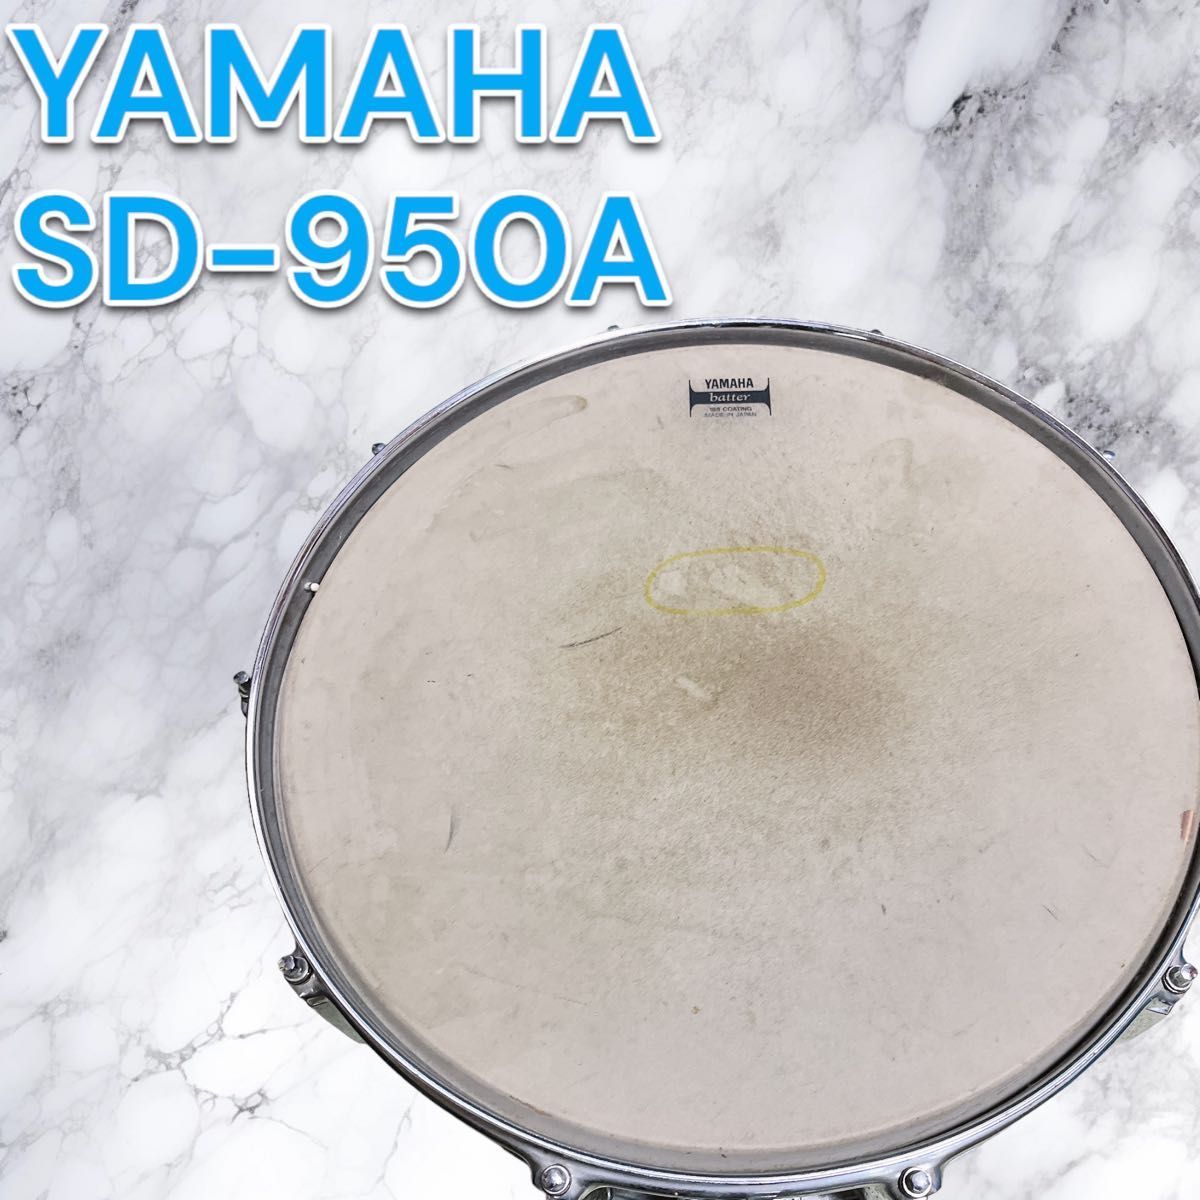 YAMAHA スネアドラム sd-950a ケース付き_画像1